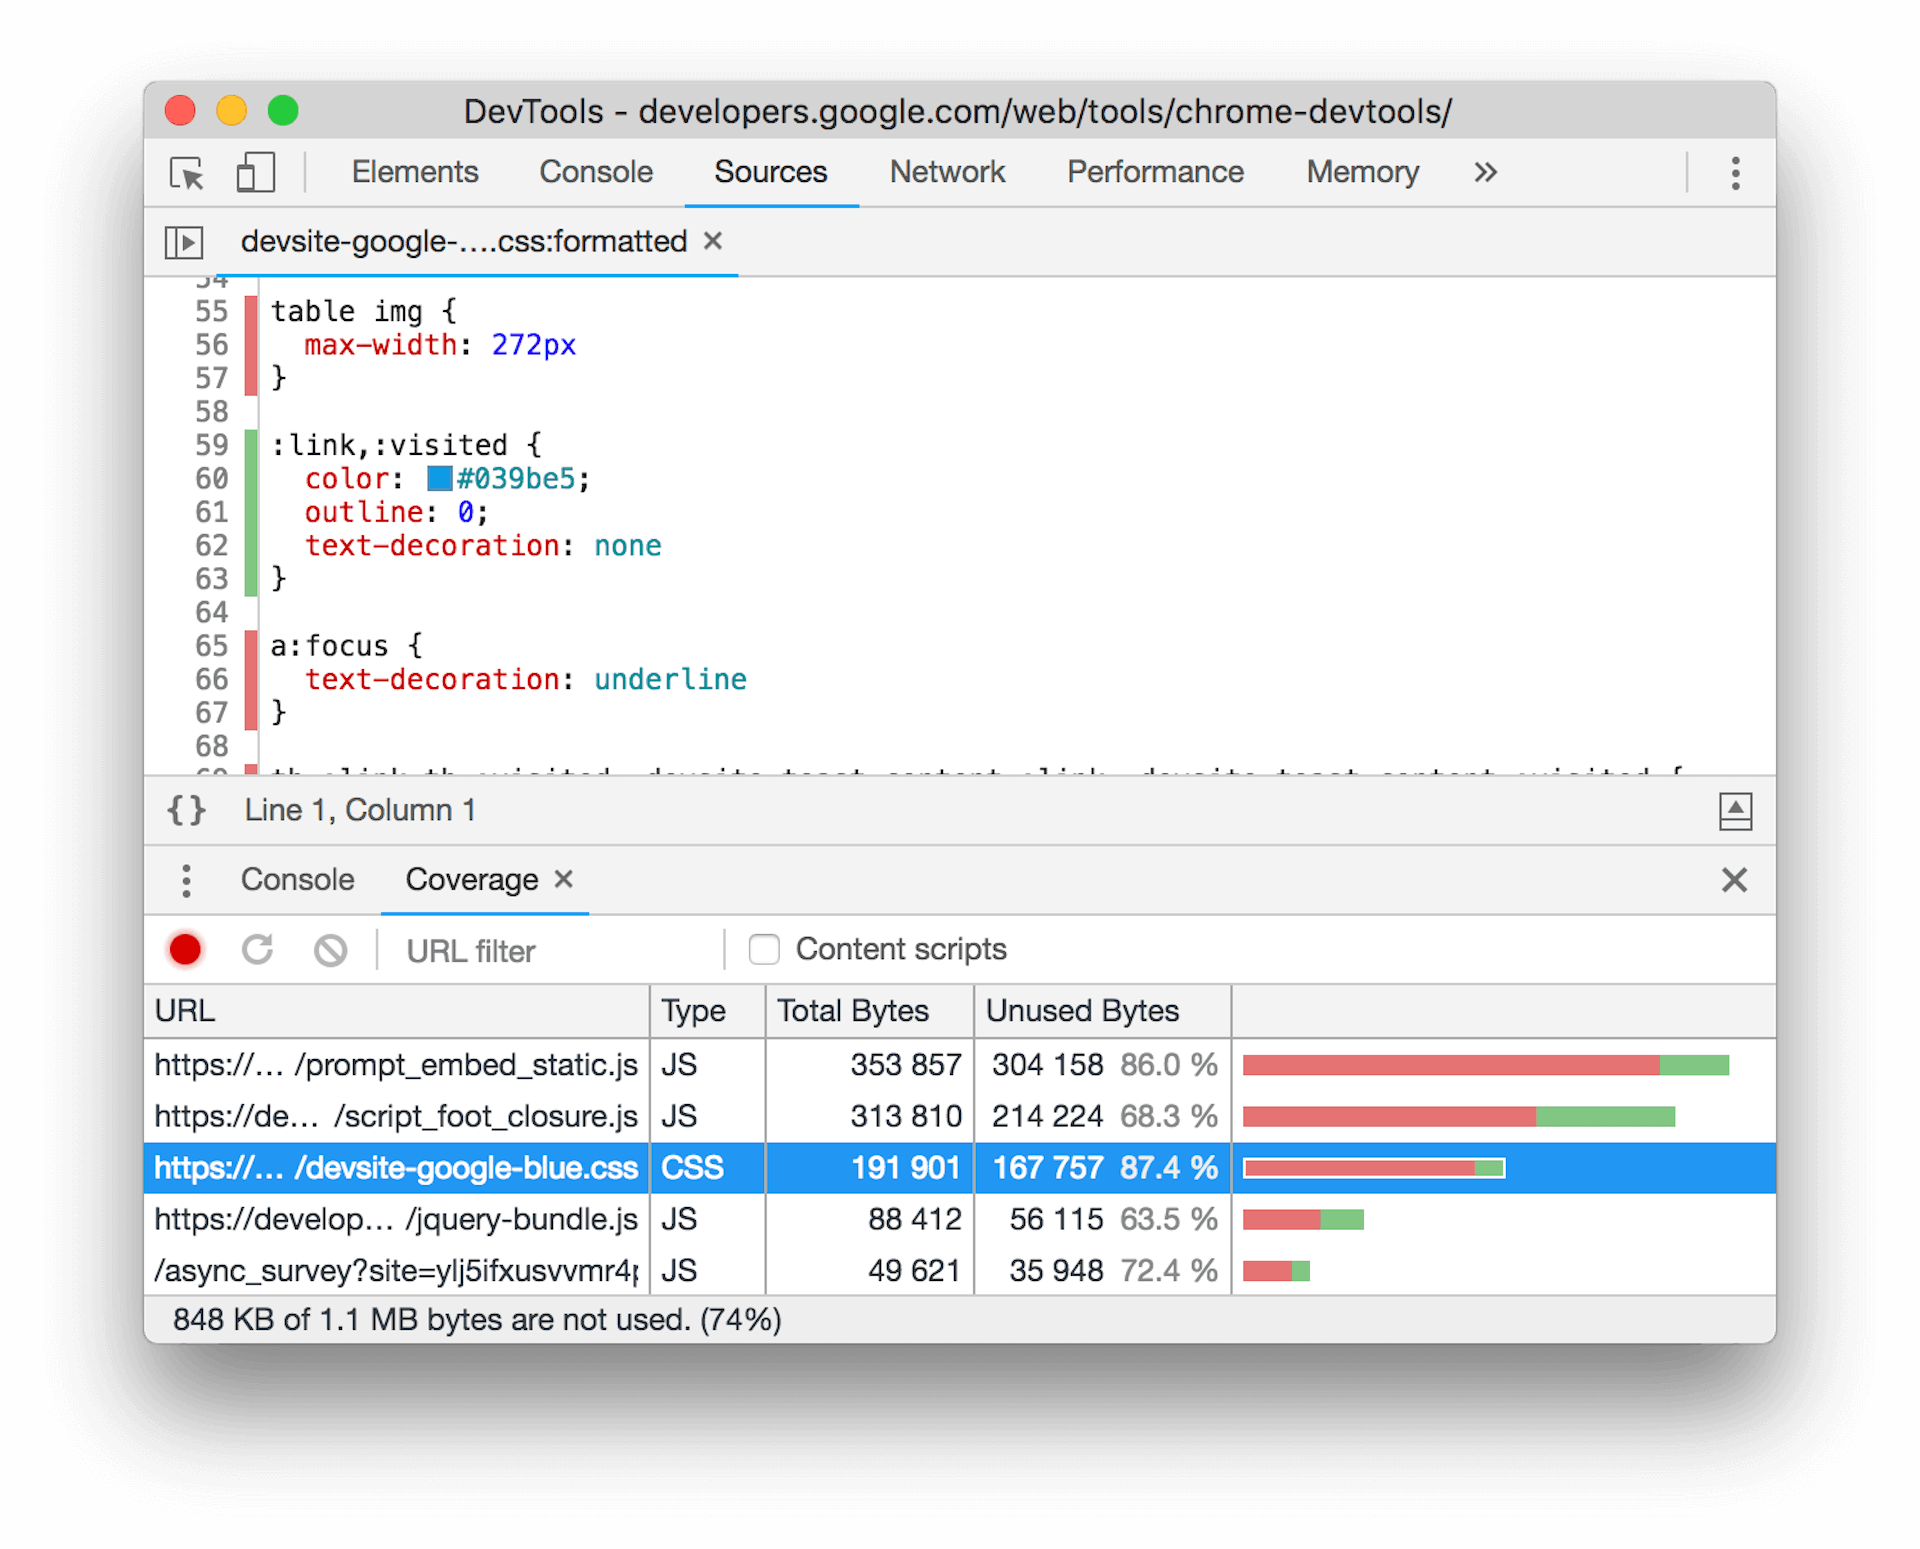 צילום מסך של כלי הכיסוי בכלי הפיתוח ל-Chrome. נבחר קובץ CSS בחלונית התחתונה ומוצג בו כמות משמעותית של CSS שלא נעשה בו שימוש בפריסת הדף הנוכחית.